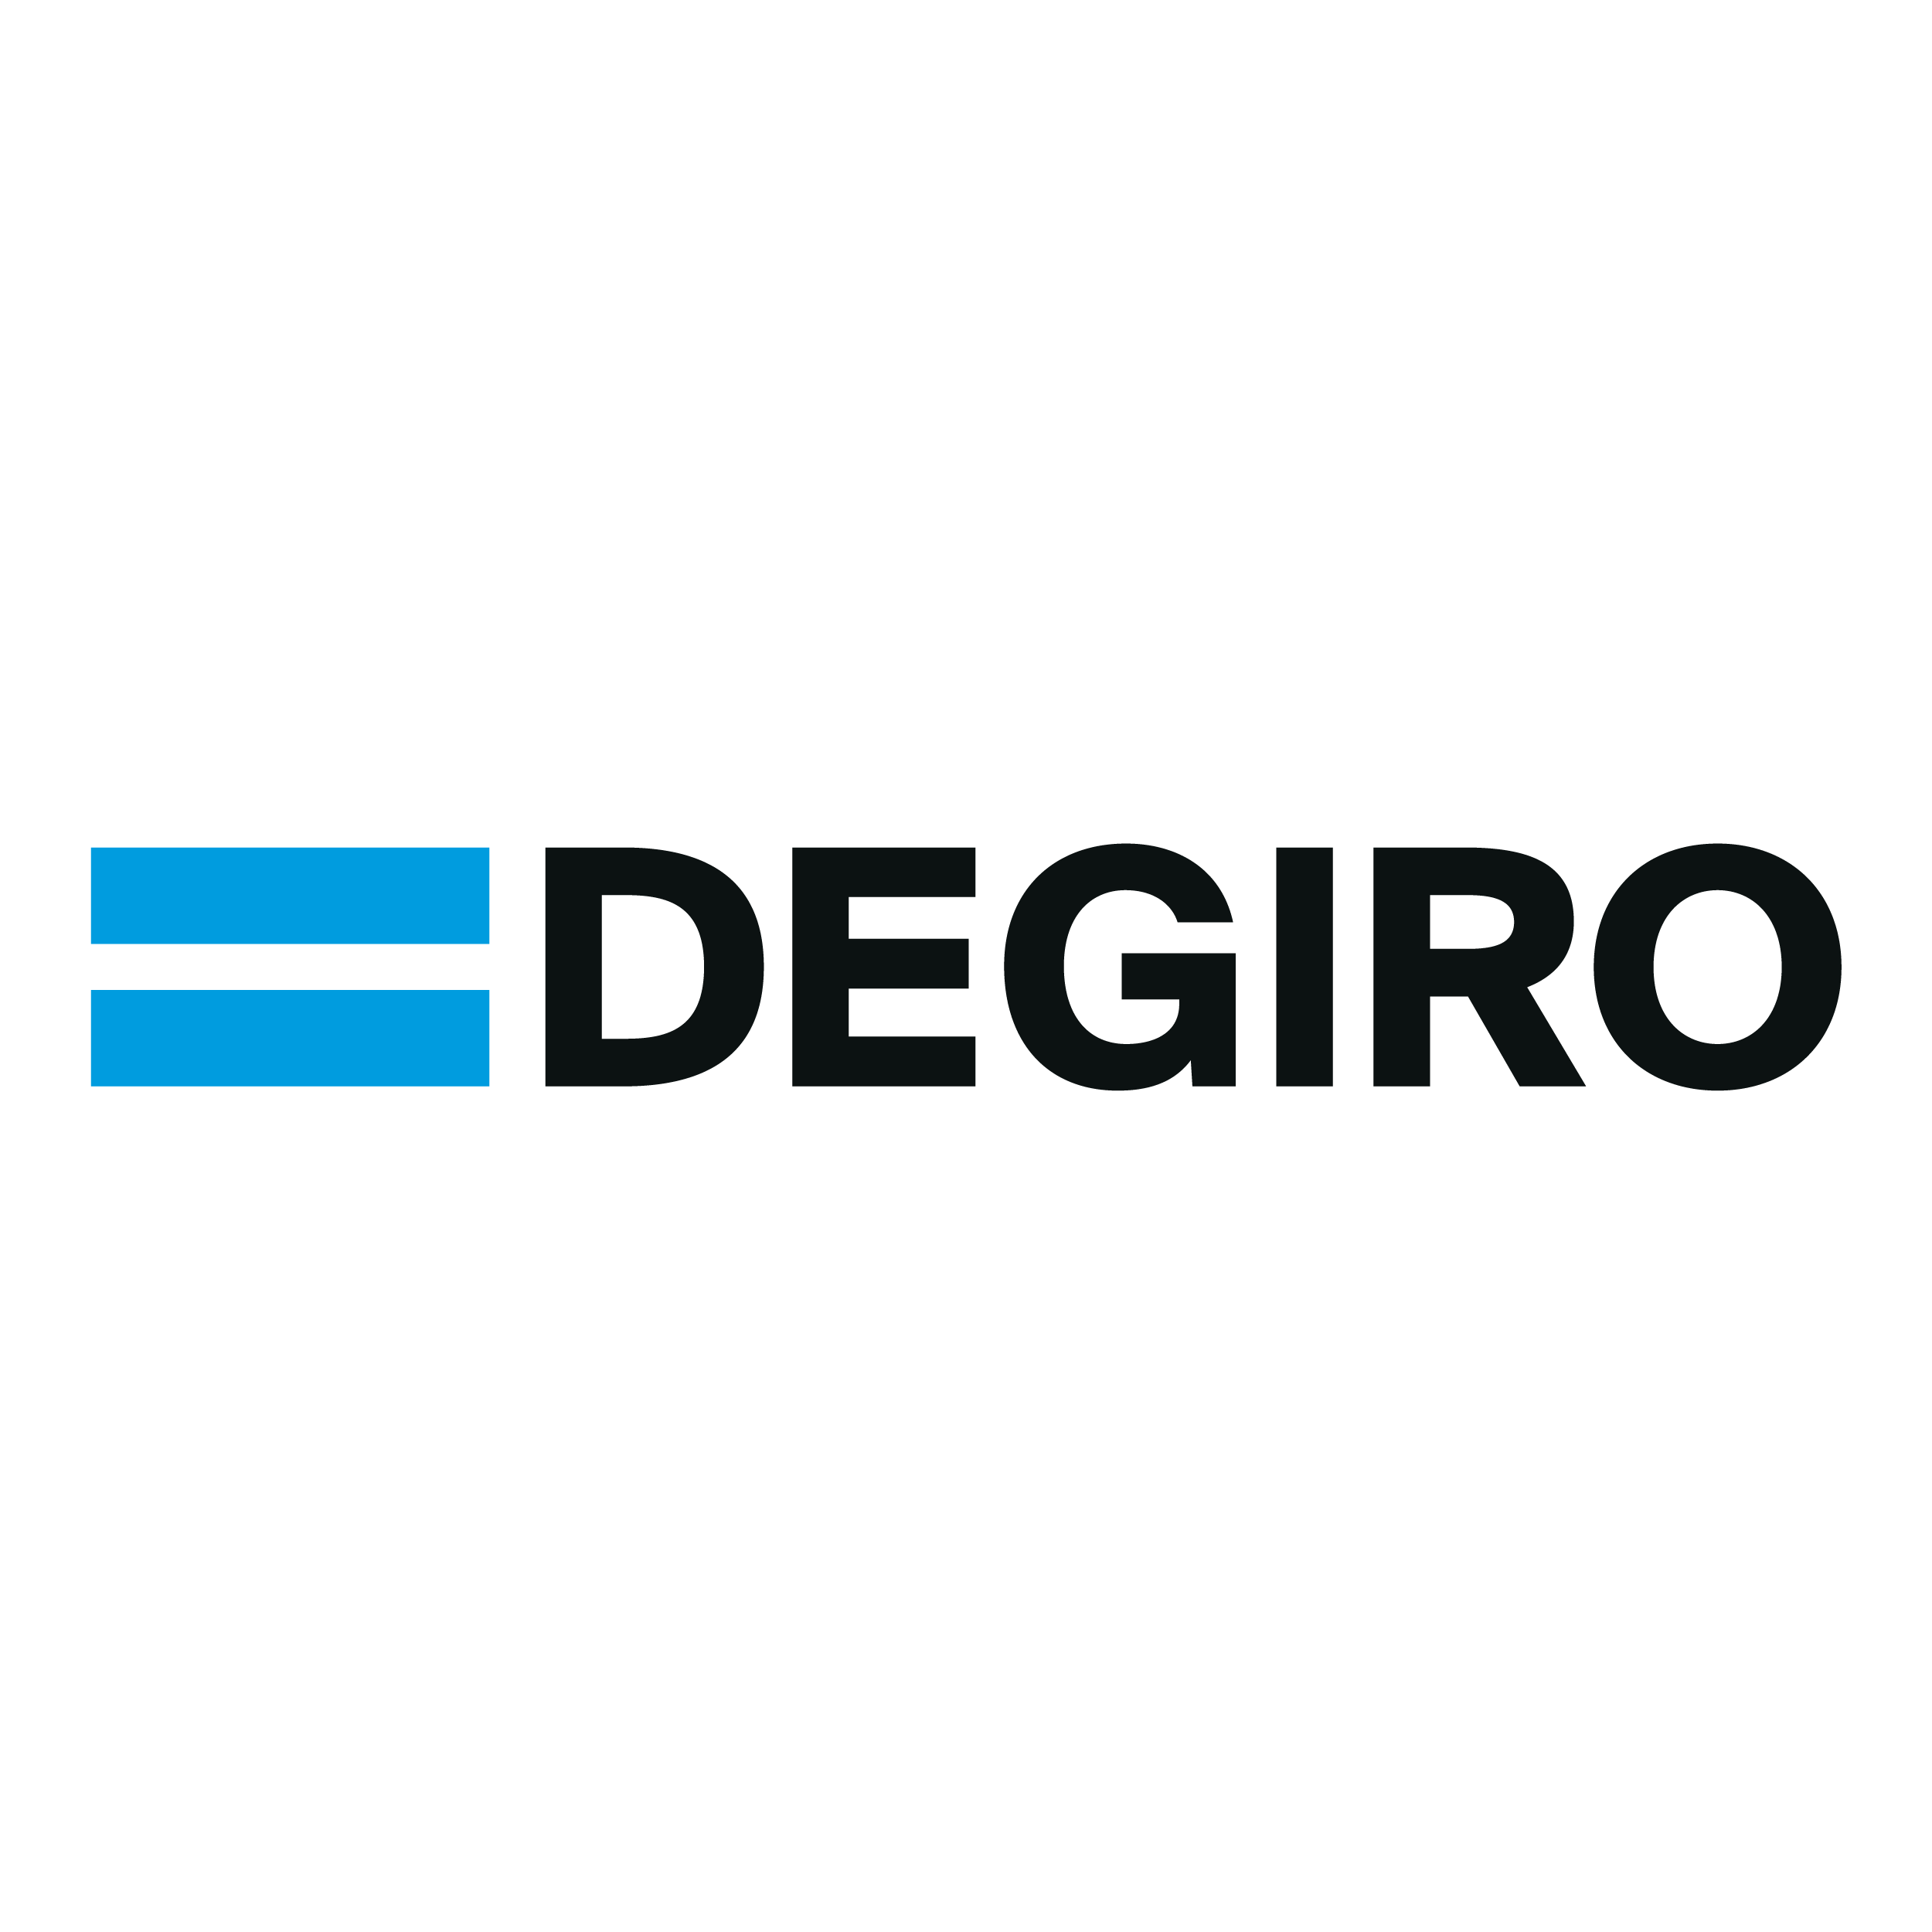 Det är faktiskt fortfarande inte möjligt att investera i kryptovaluta direkt, men DEGIRO erbjuder kryptobörshandlade produkter i form av ETFer och ETNer på plattformen, såsom: